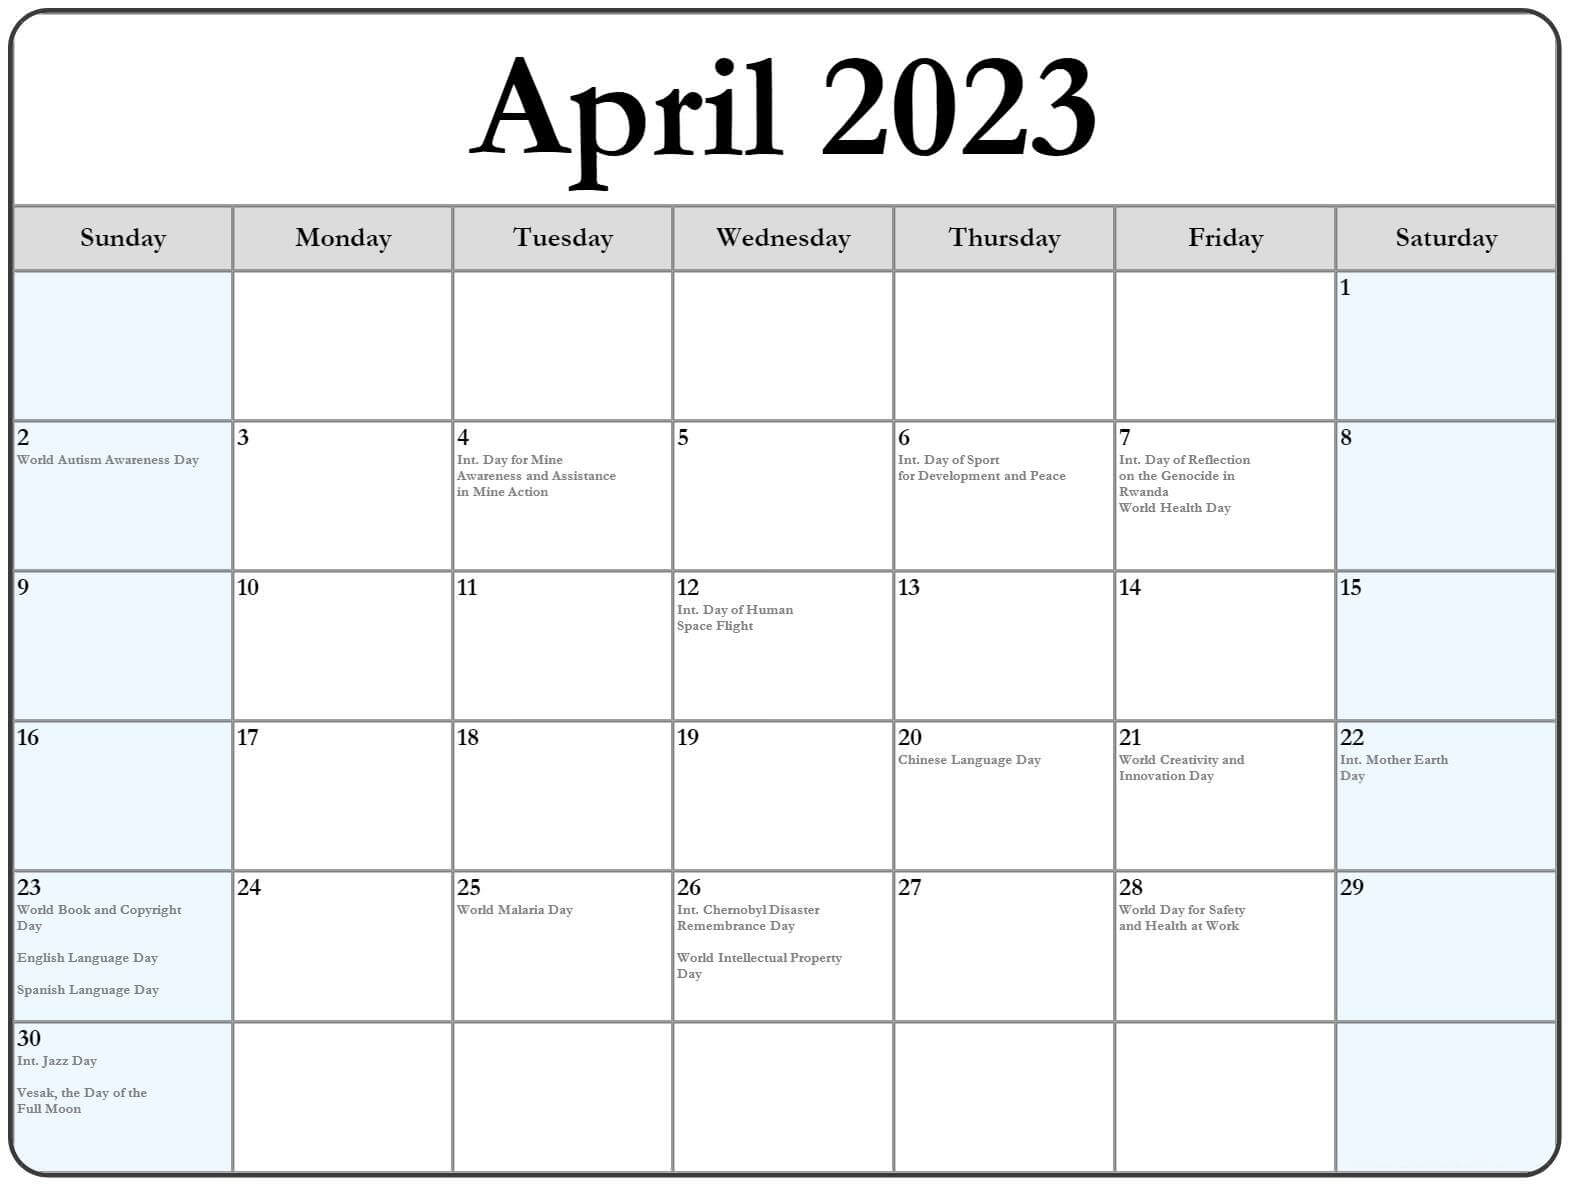 april-2023-calendar-holidays-with-dates